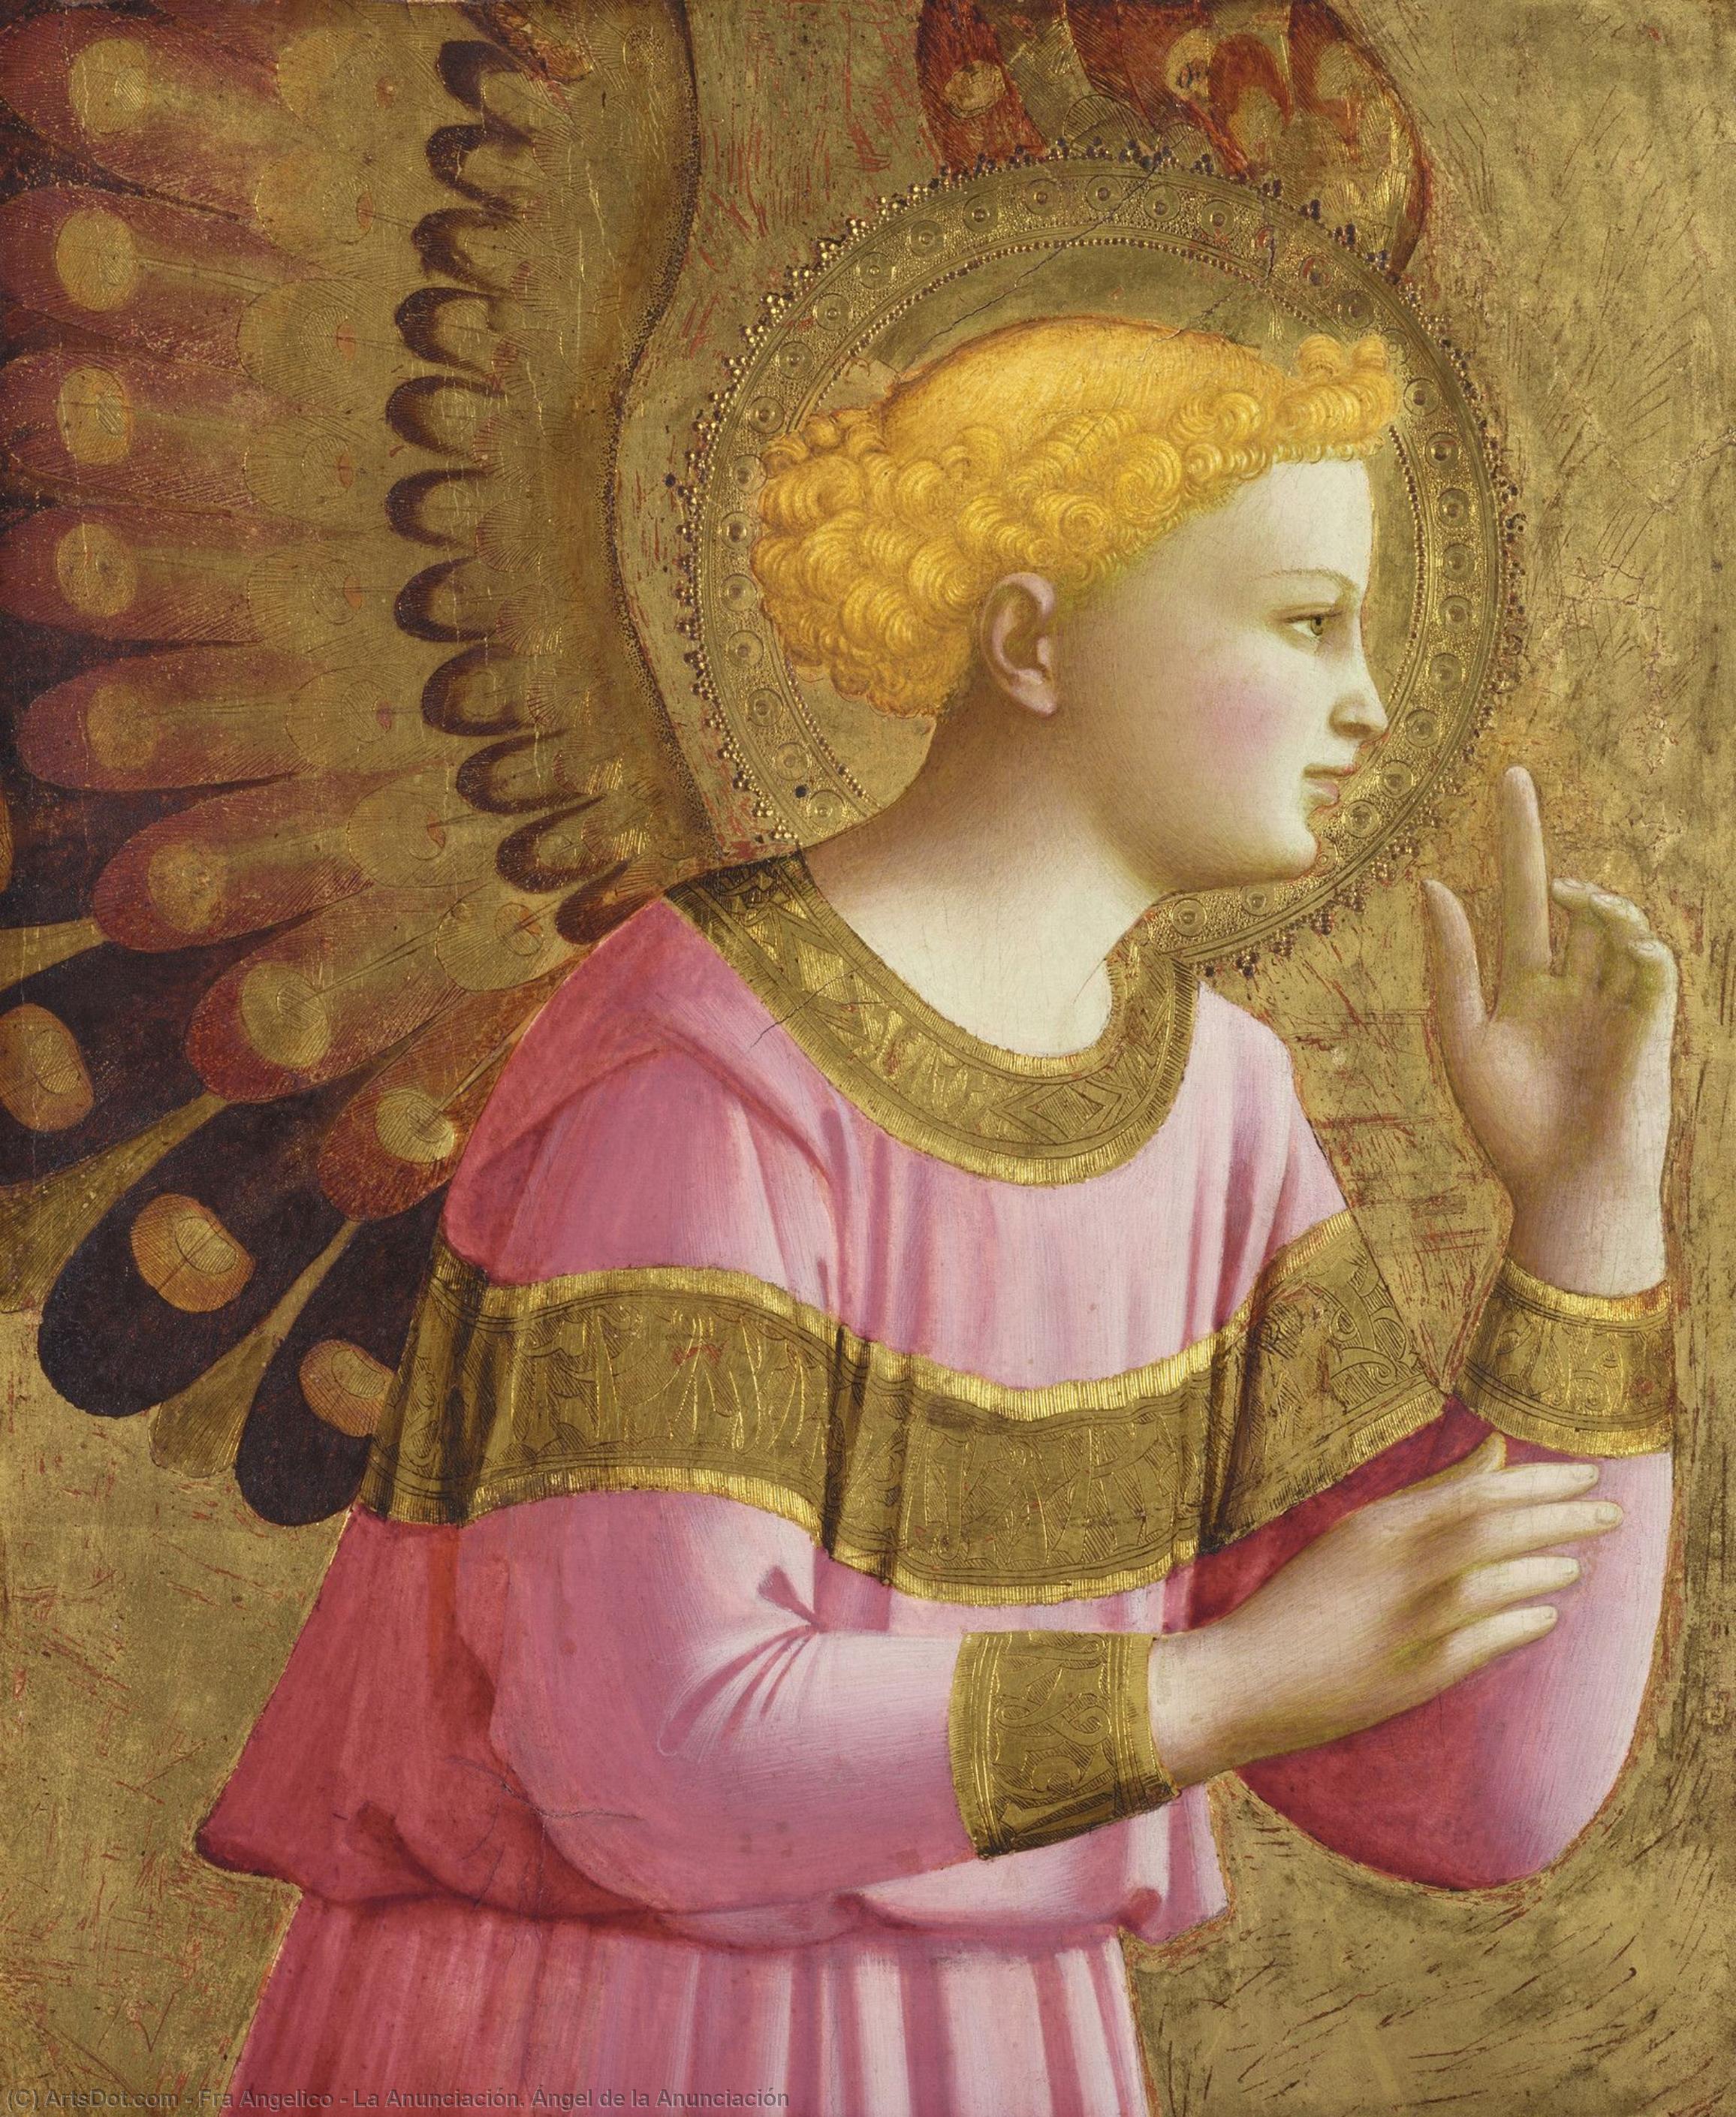 WikiOO.org - Güzel Sanatlar Ansiklopedisi - Resim, Resimler Fra Angelico - La Anunciación. Ángel de la Anunciación